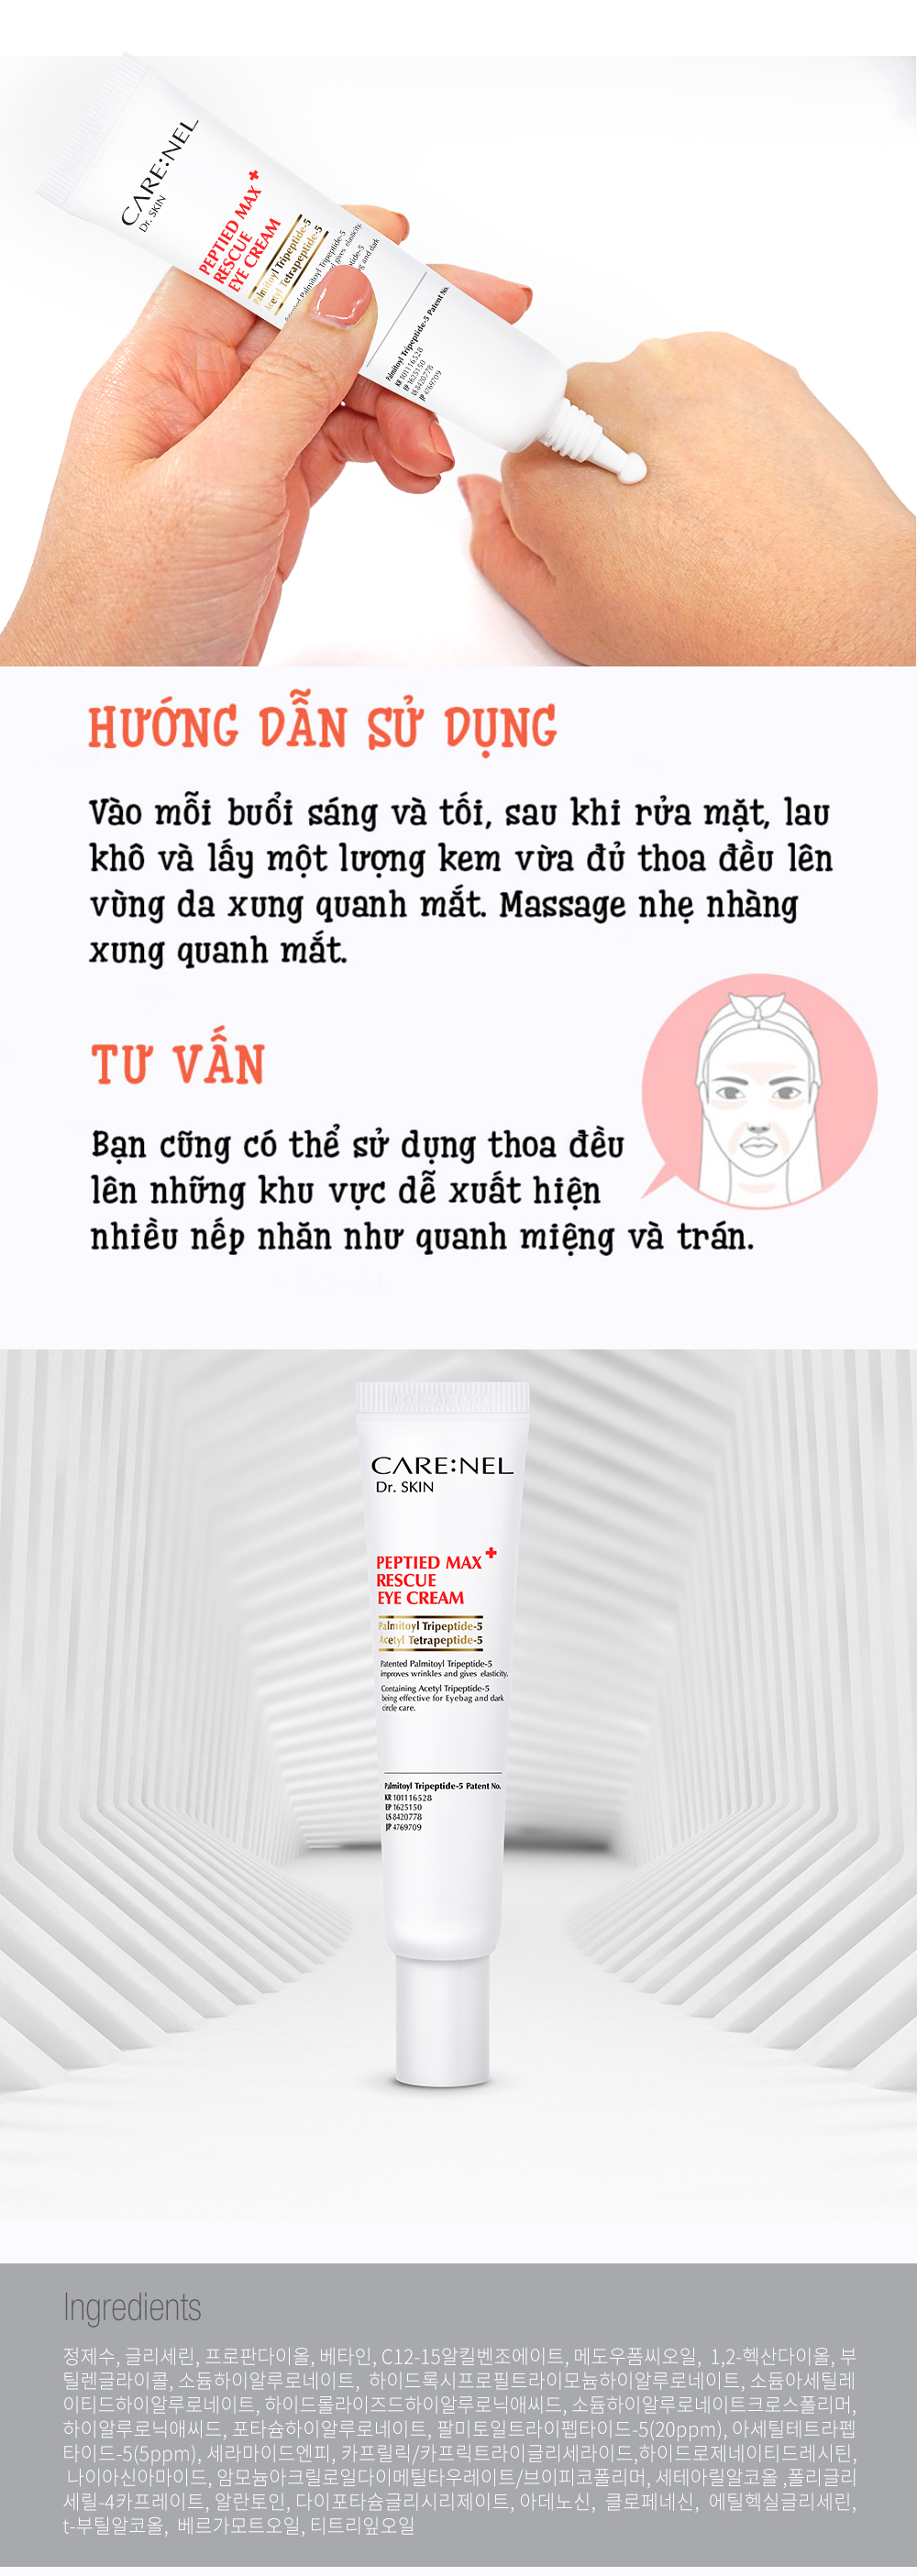 Kem Duong Mat Carenel (6)